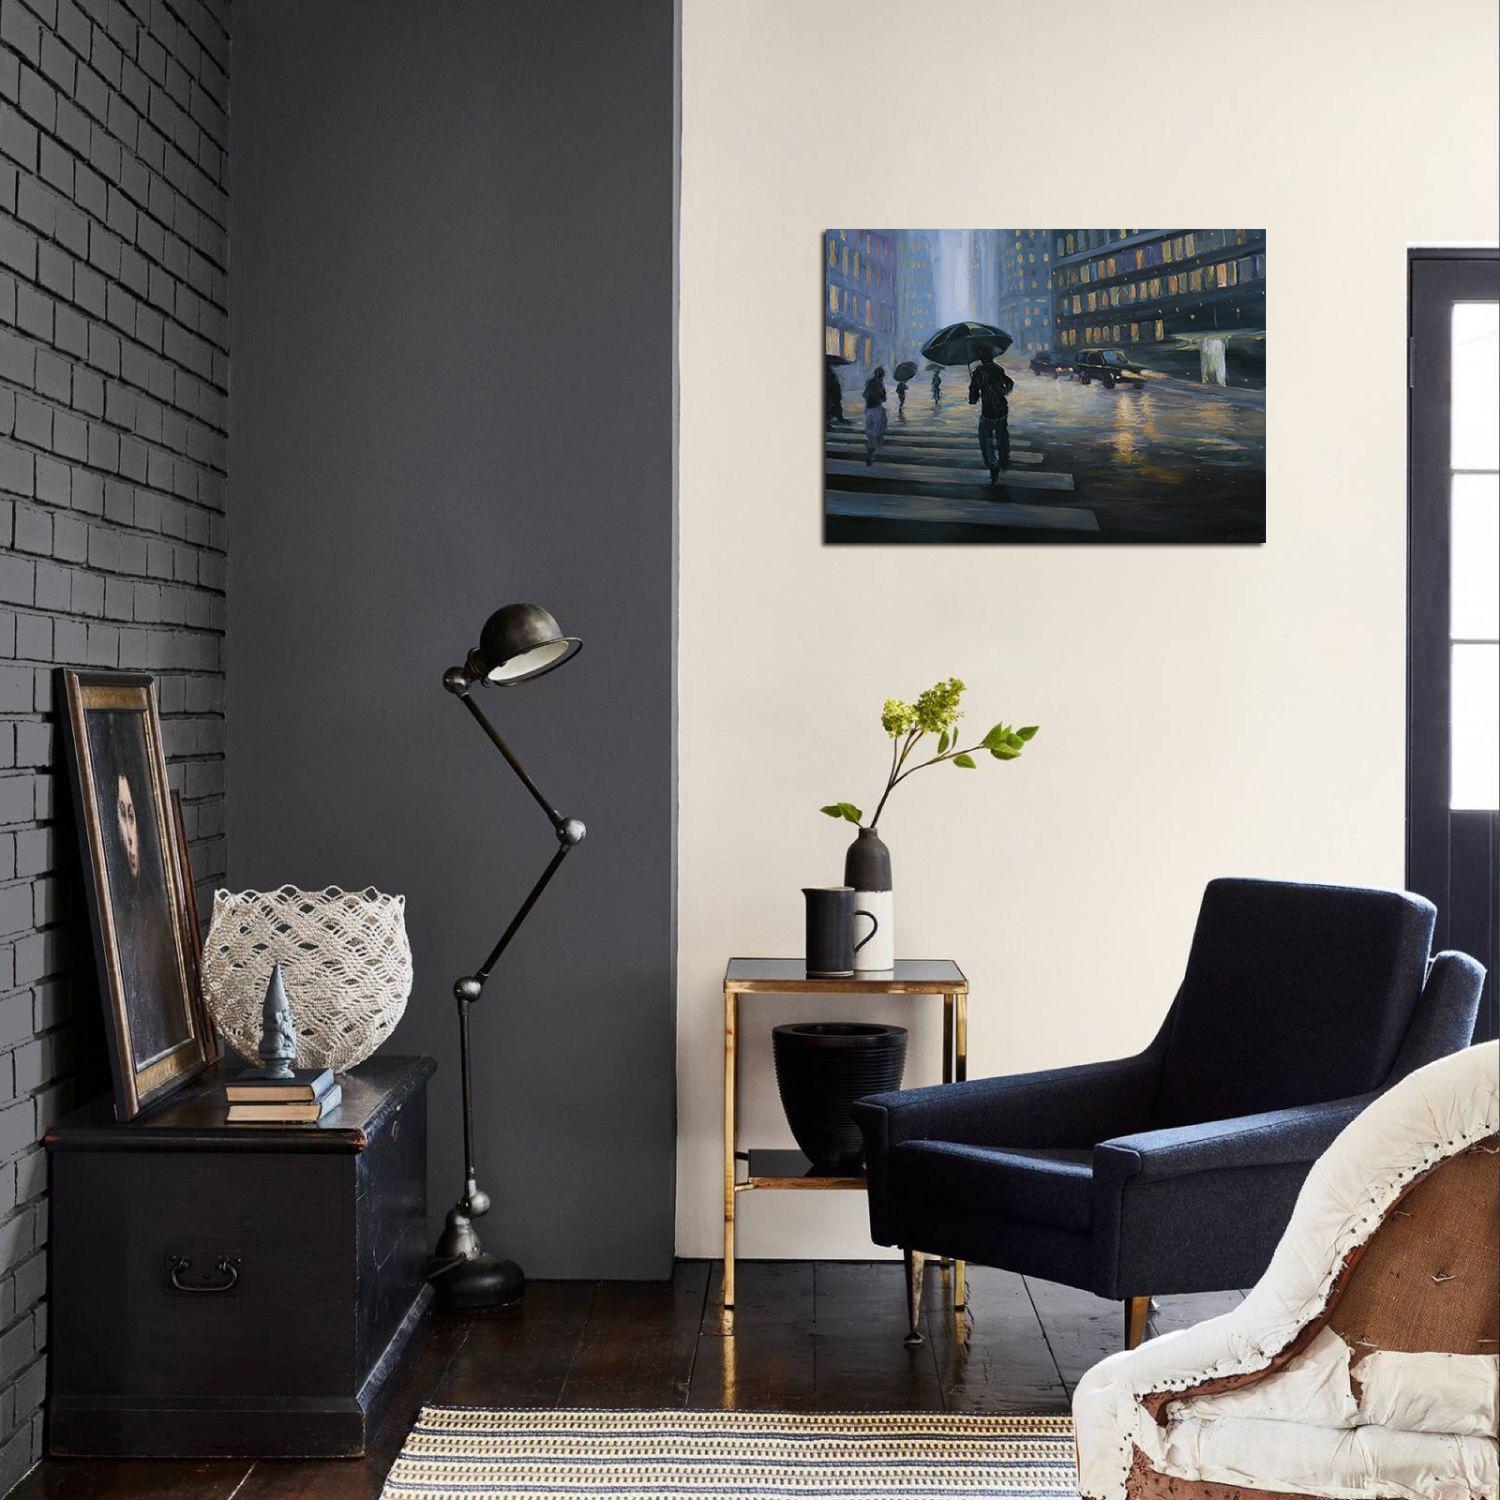 Das Gemälde mit dem verregneten Manhattan ist ein tolles und stilvolles Stadtbild - das Spiel von dunklen und hellen Farbtönen ist professionell eingefangen und macht sich gut in der Inneneinrichtung eines Büros oder in Ihrem Zuhause.

Das Bild ist